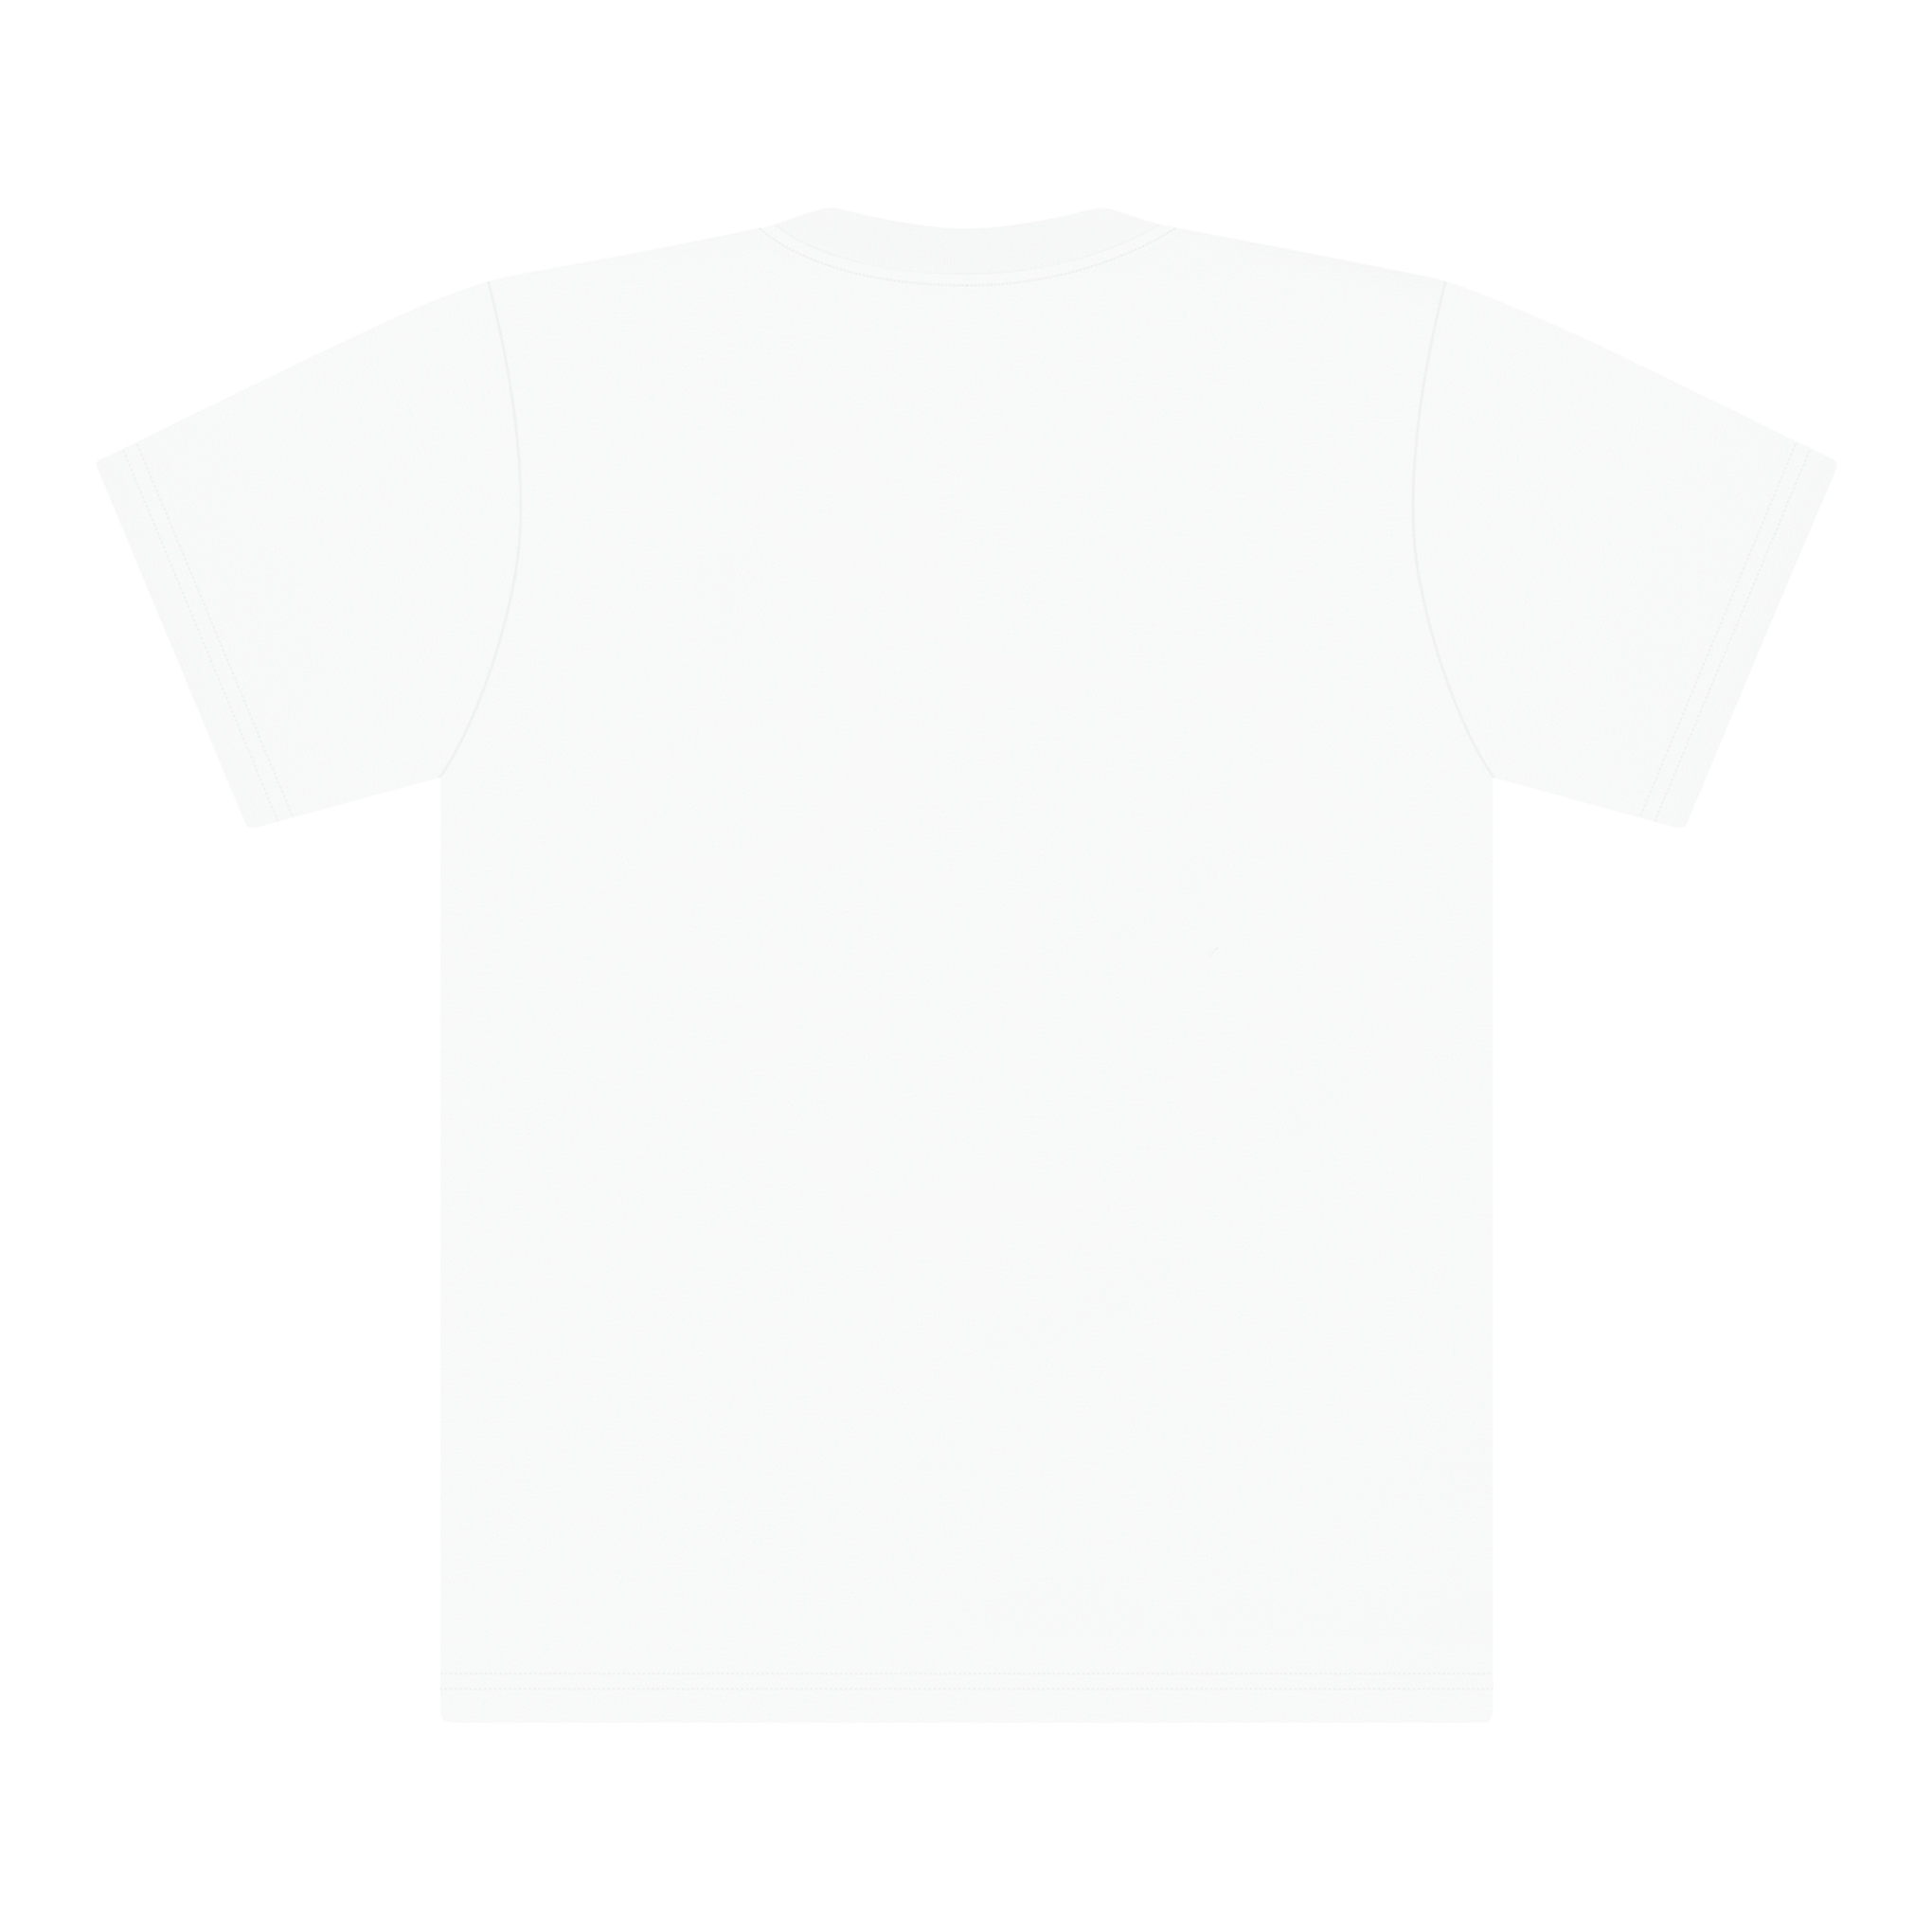 白色 SUPREME 横幅 T 恤